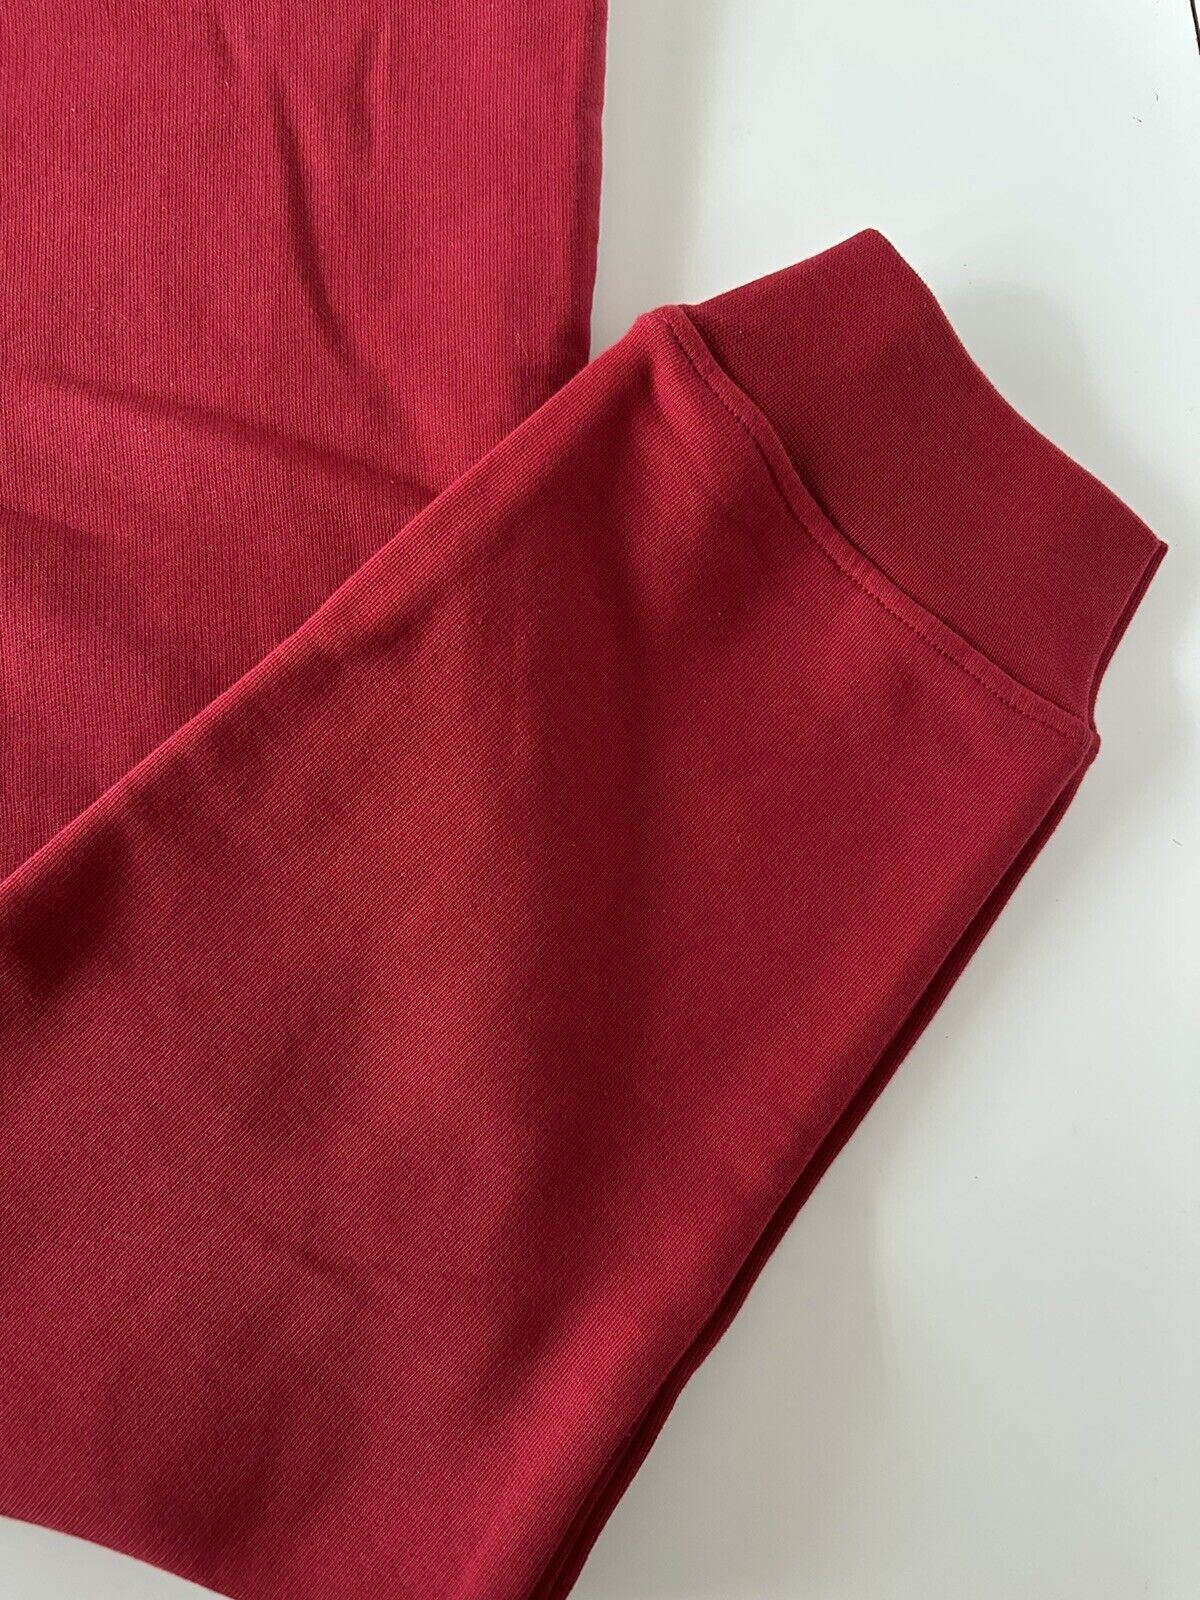 Мужские красные брюки с логотипом Medusa Versace, размер 3XL, A89515S, NWT, 650 долларов США 